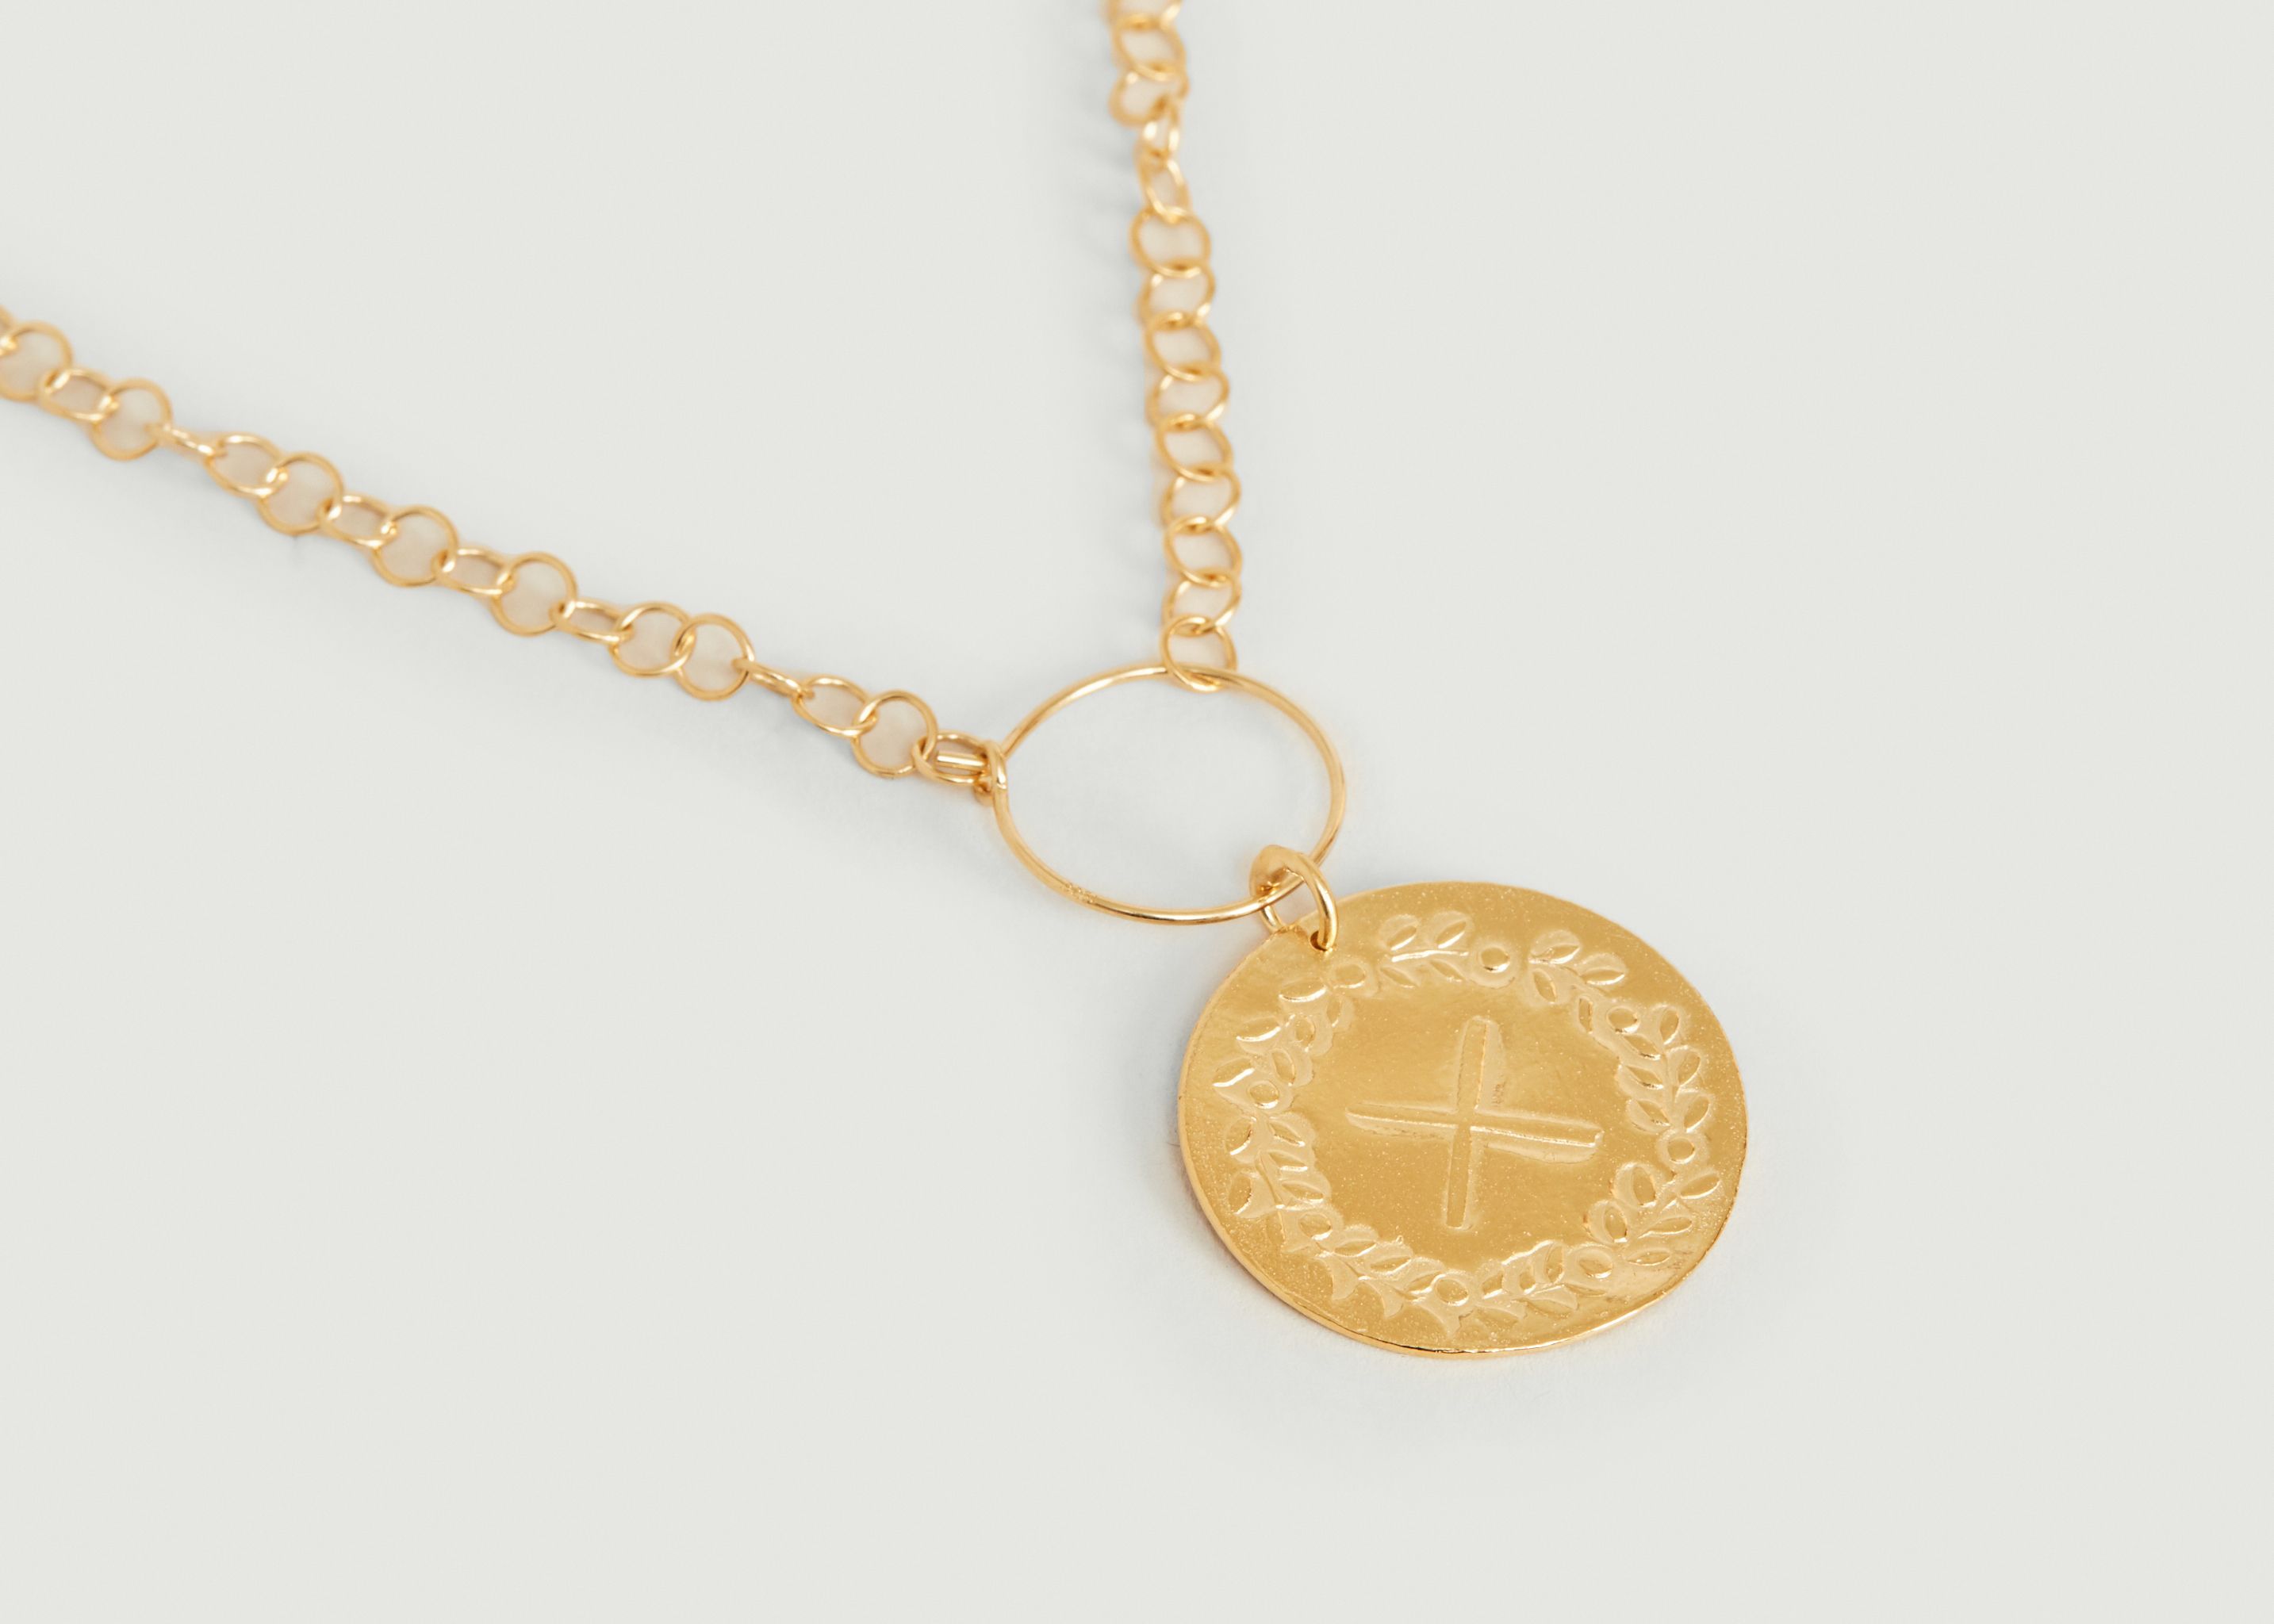 Lauriers S vermeil medal necklace to personalize - Par Coeur